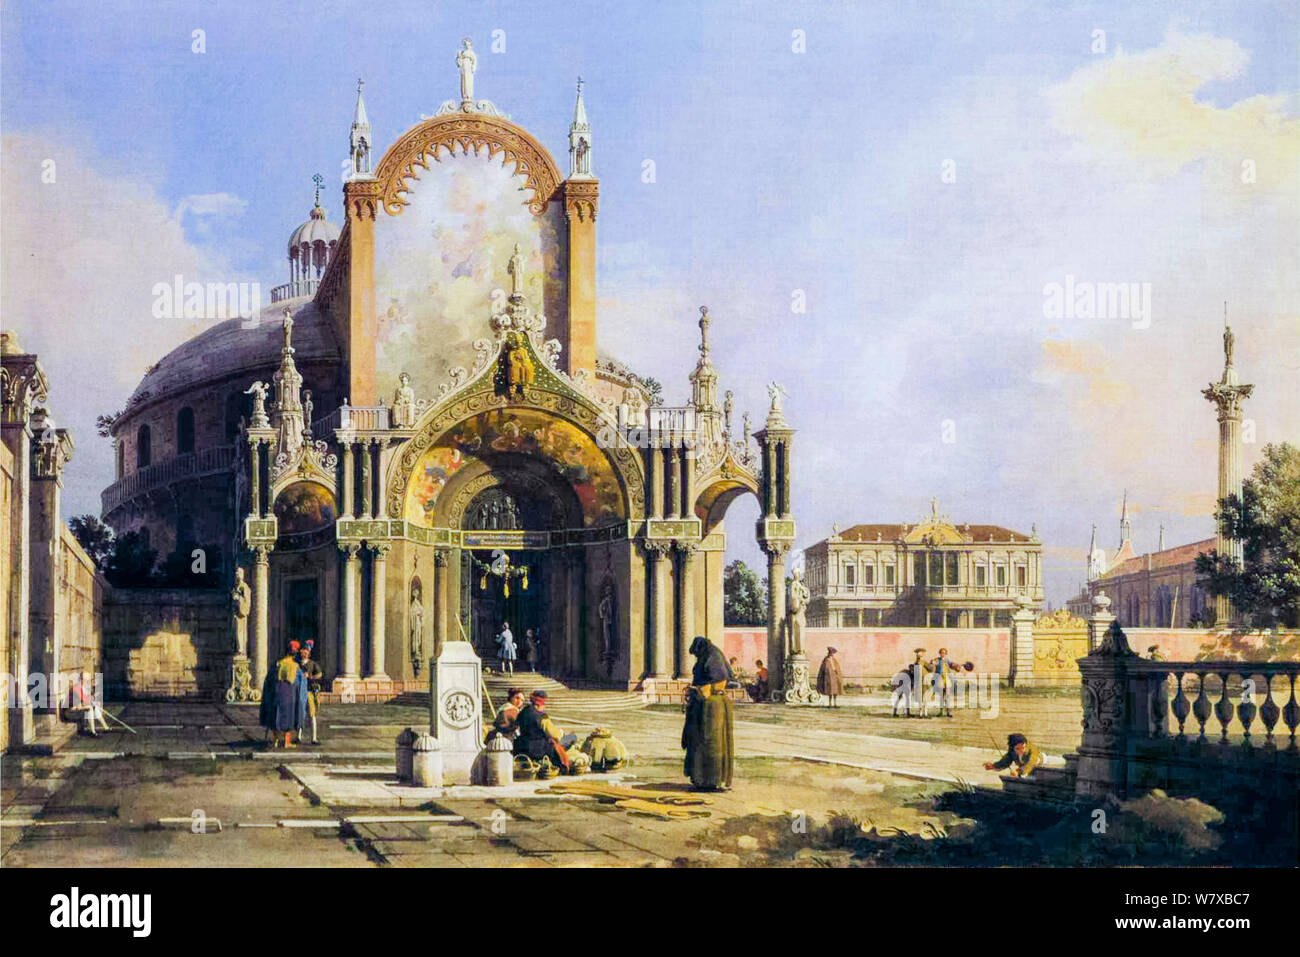 Canaletto, Capriccio d'une église ronde avec un portique Gothique dans une piazza, un palais de Palladio et une église gothique au-delà, peinture, 1753-1755 Banque D'Images